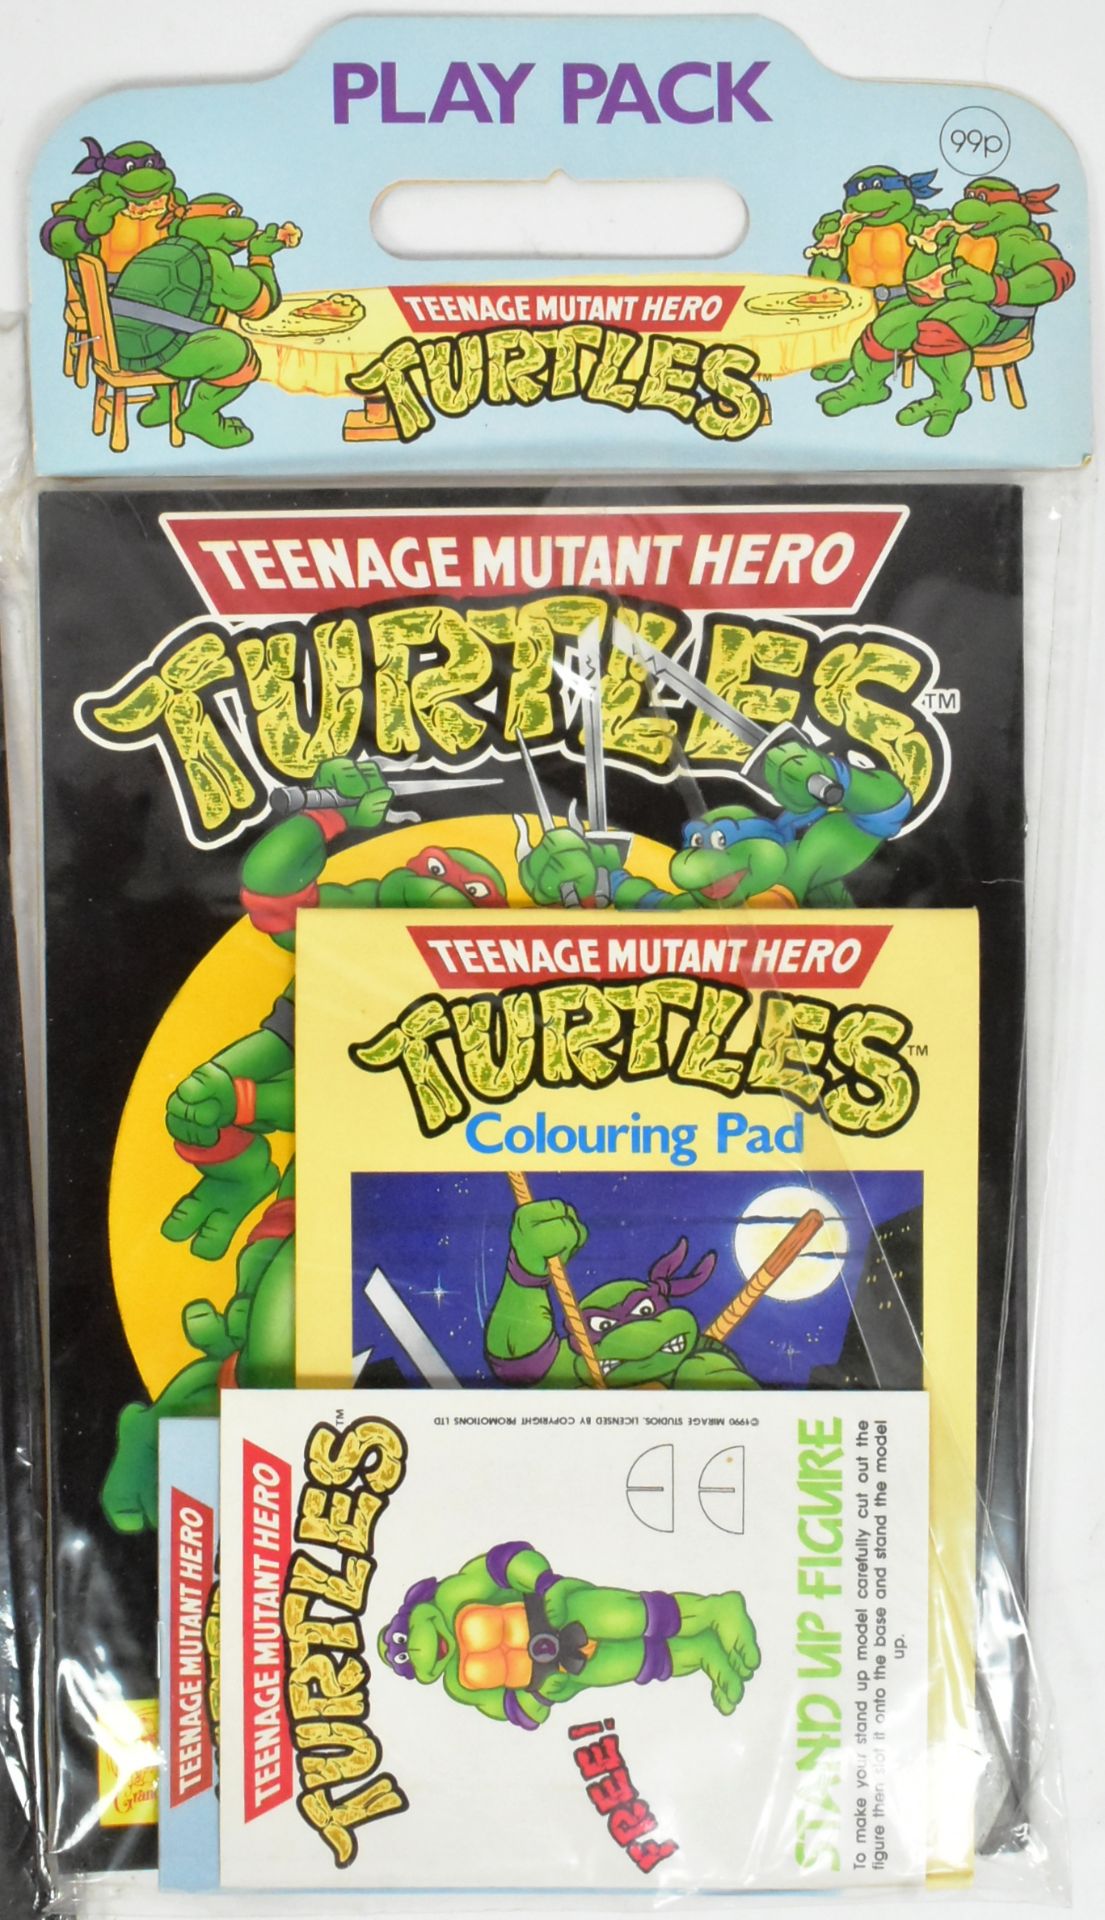 TEENAGE MUTANT HERO TURTLES - VINTAGE 1989 PLAY PACK SETS - Image 2 of 4